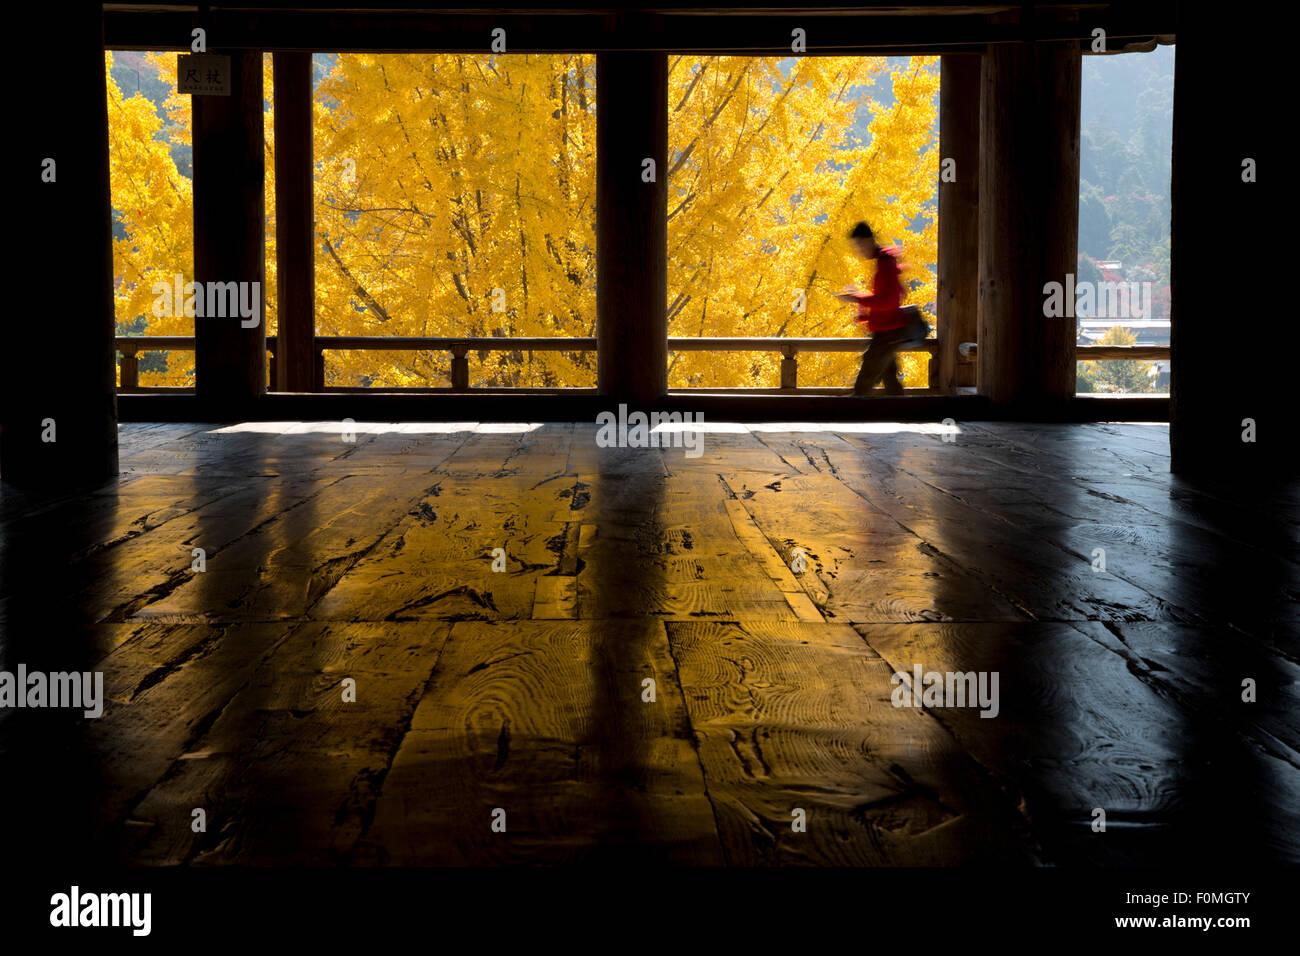 Gelb, die herbstlichen Blätter von innen Toyokuni-Schrein, Insel Miyajima, westlichen Honshu, Japan, Asien betrachtet Stockfoto